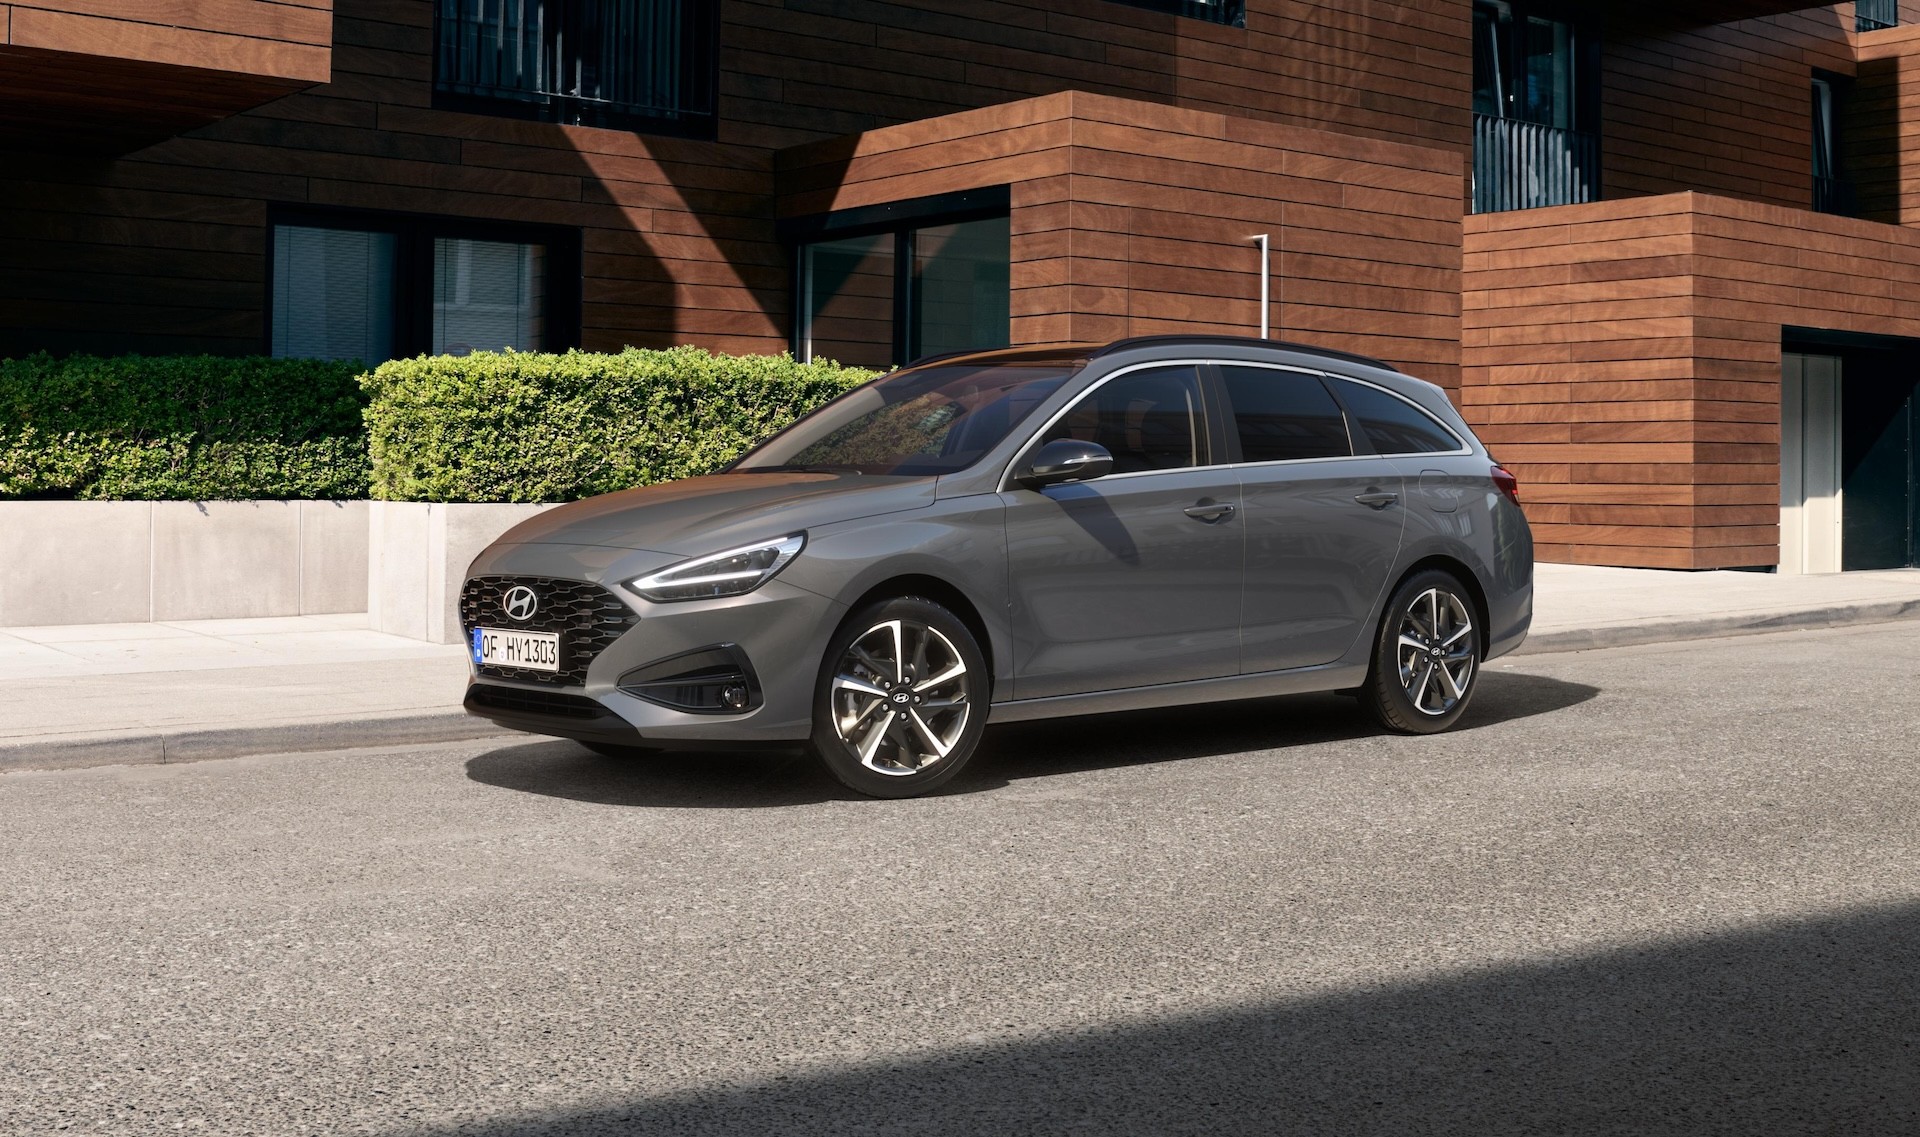 Νέο Hyundai i30: Με τολμηρές σχεδιαστικές βελτιώσεις και τεχνολογίες αιχμής